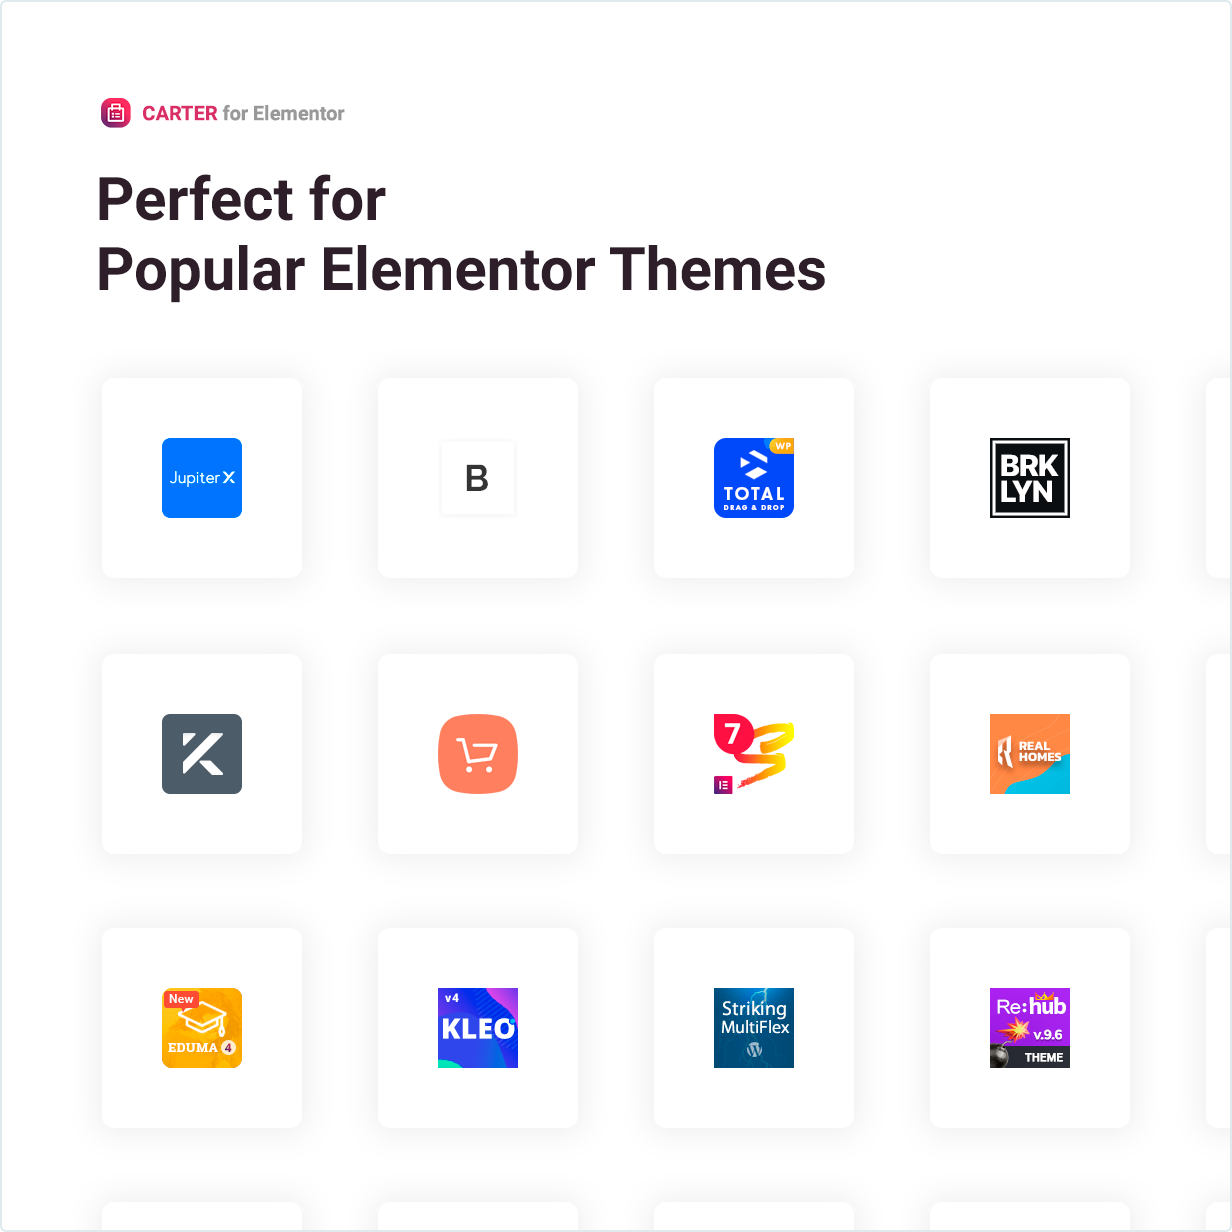 Beliebt für beliebte Elementor-Designs